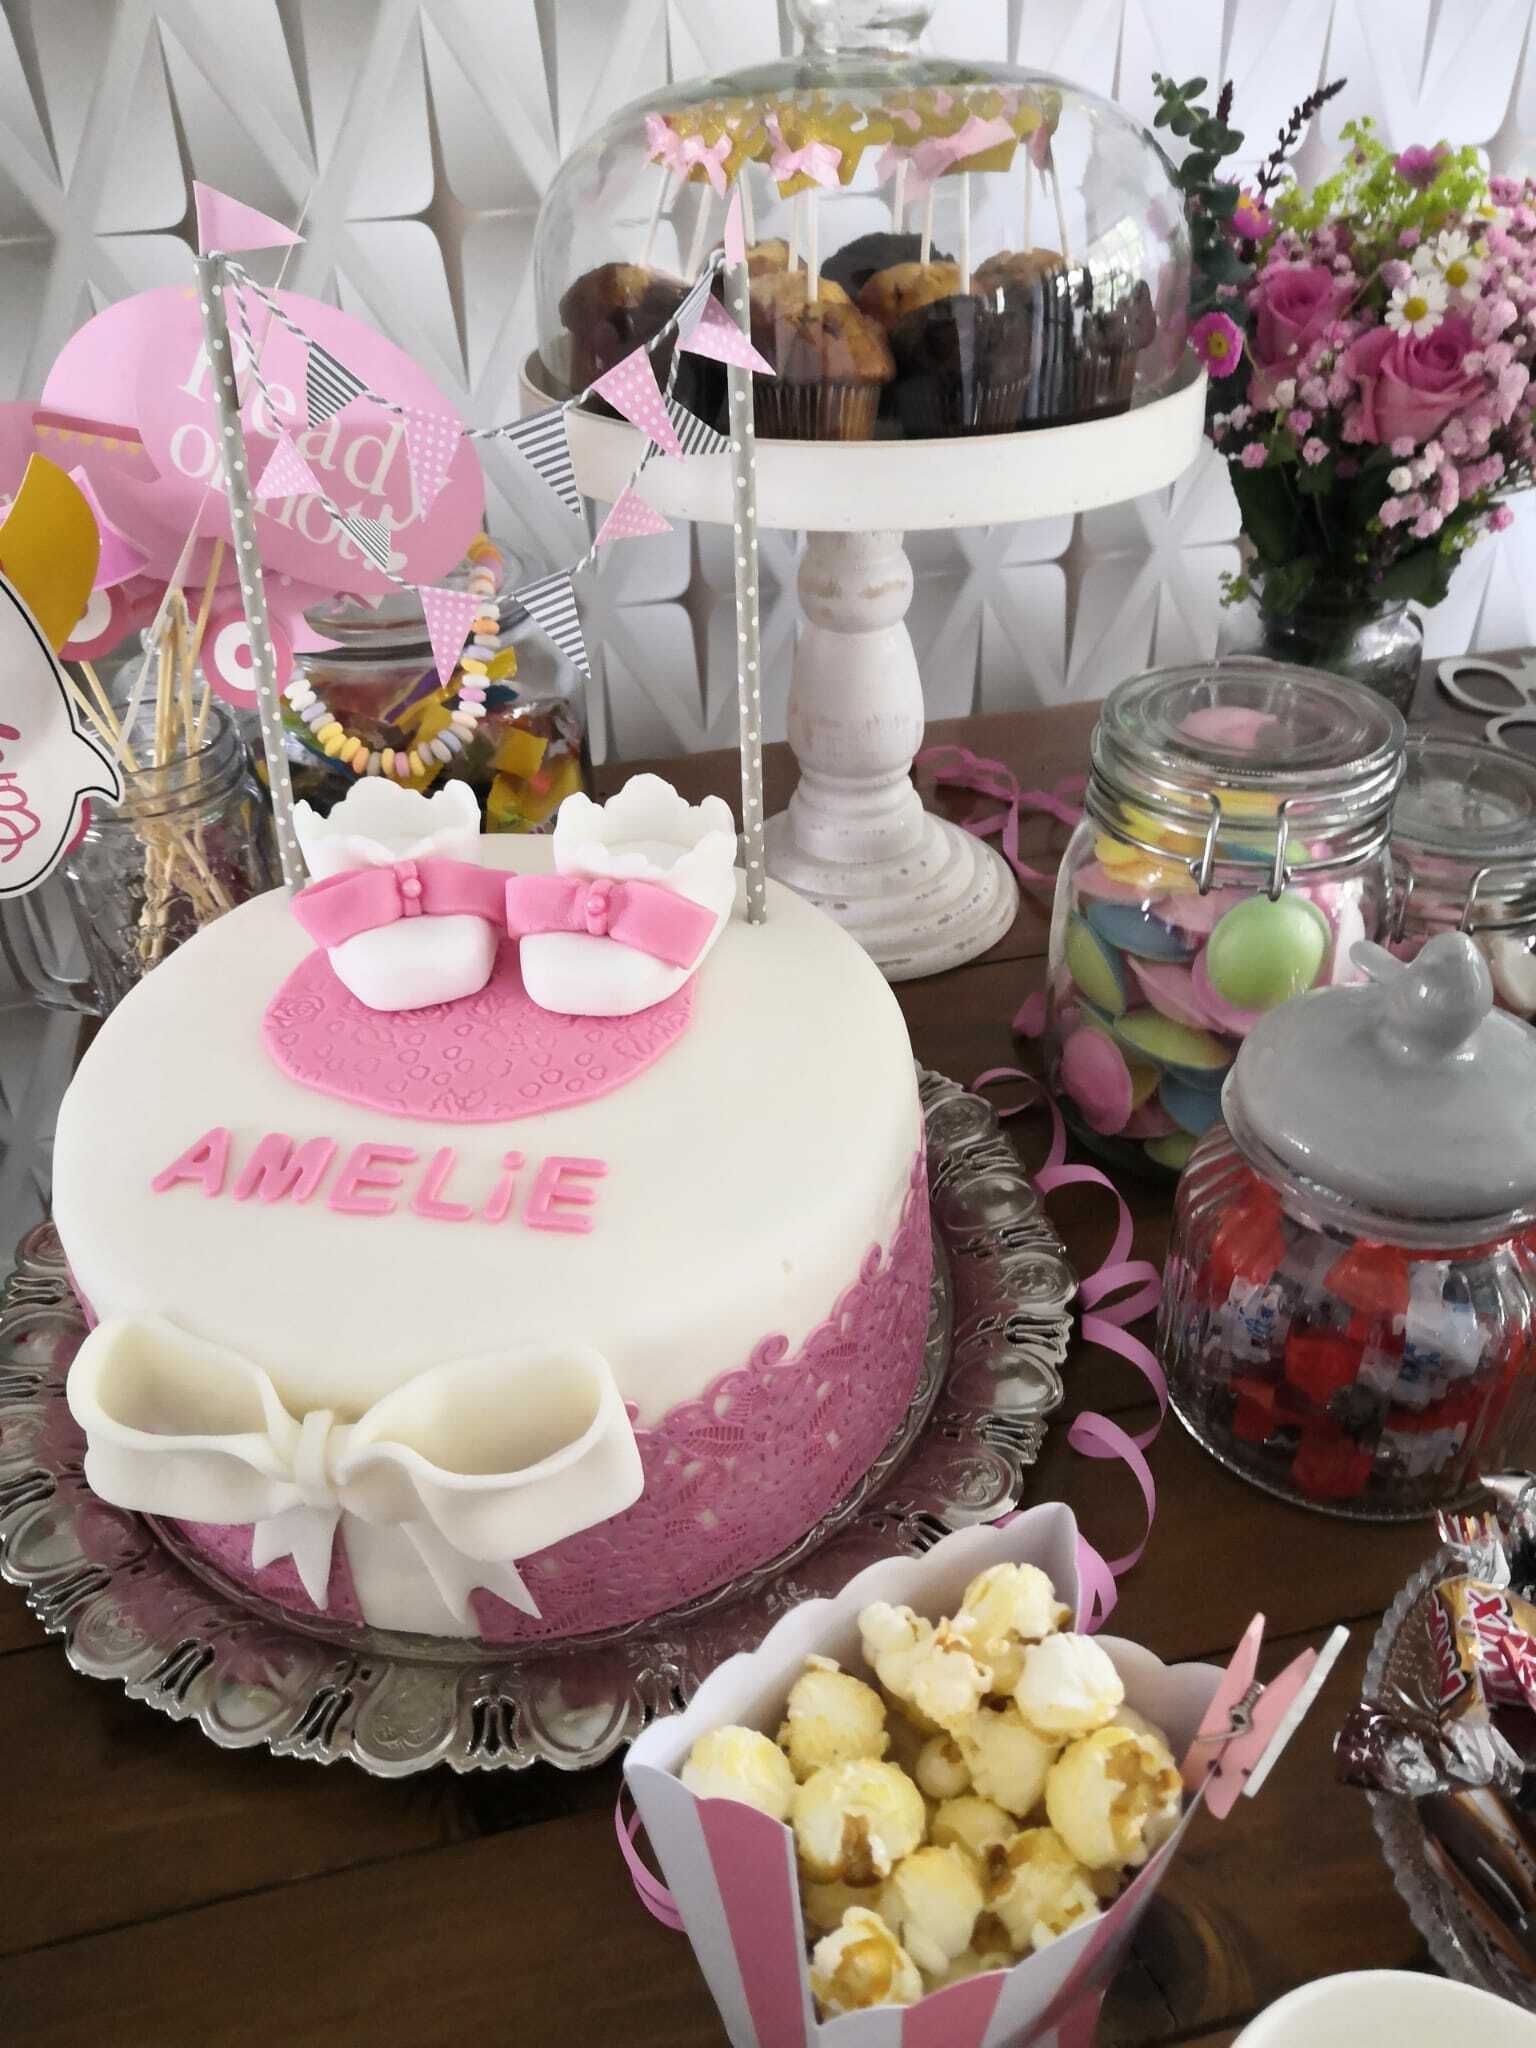 Das Bild ist ein Foto von einer Geburtstagstorte mit Creme und pinkner Verzierung von Namen Amelie mit zwei Babyschuhen Verzierung